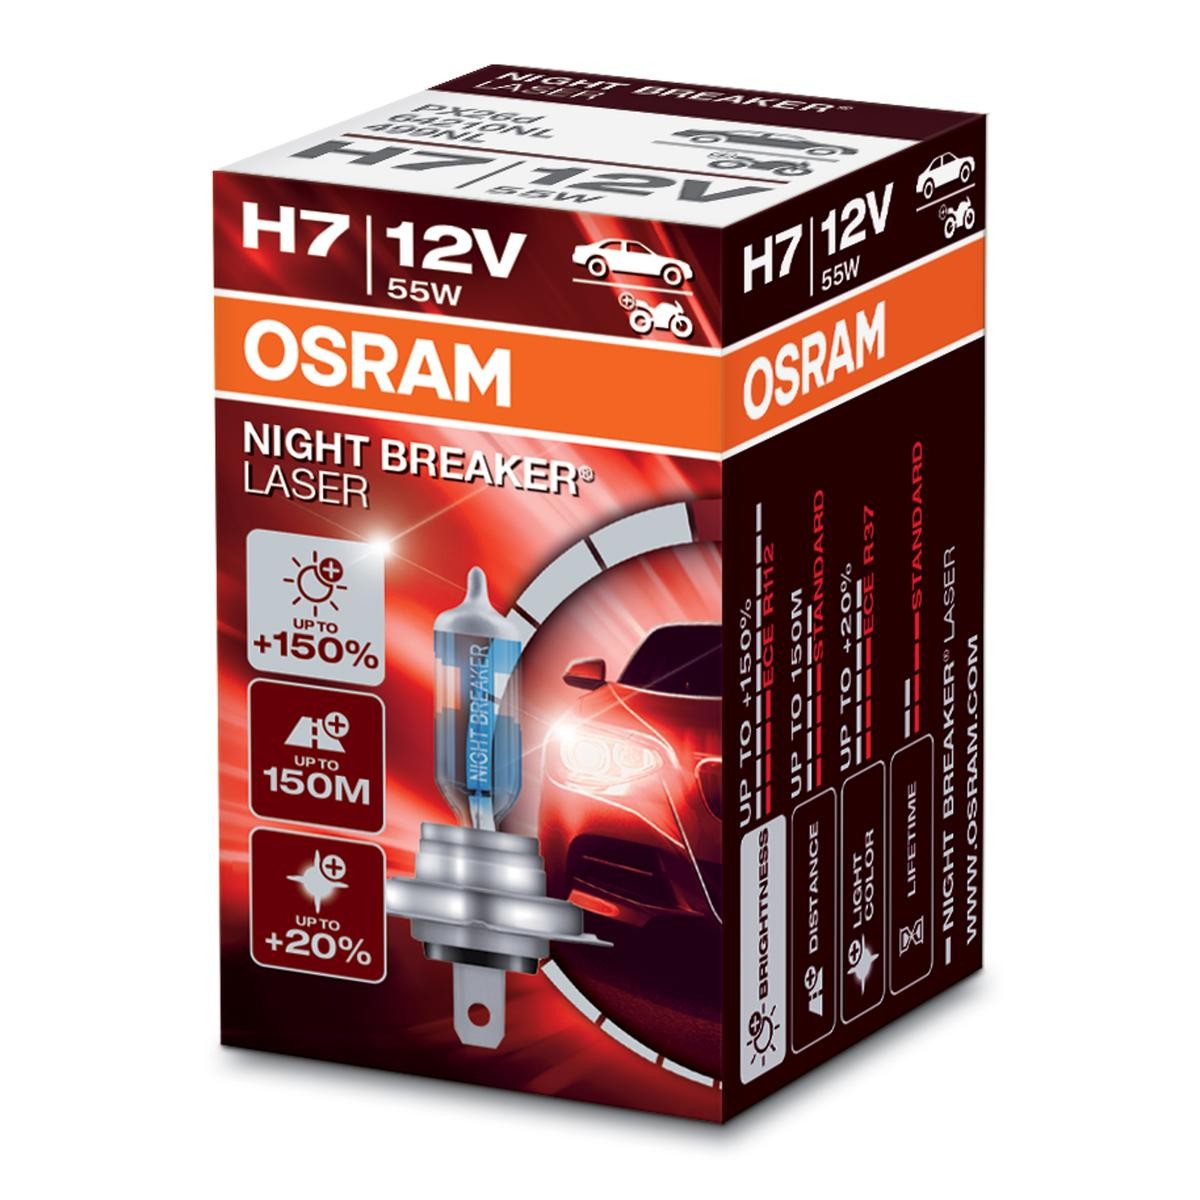 OSRAM NIGHT BREAKER LASER next Generation 64210NL Bulb, spotlight H7 12V 55W PX26d, 4050K, Halogen